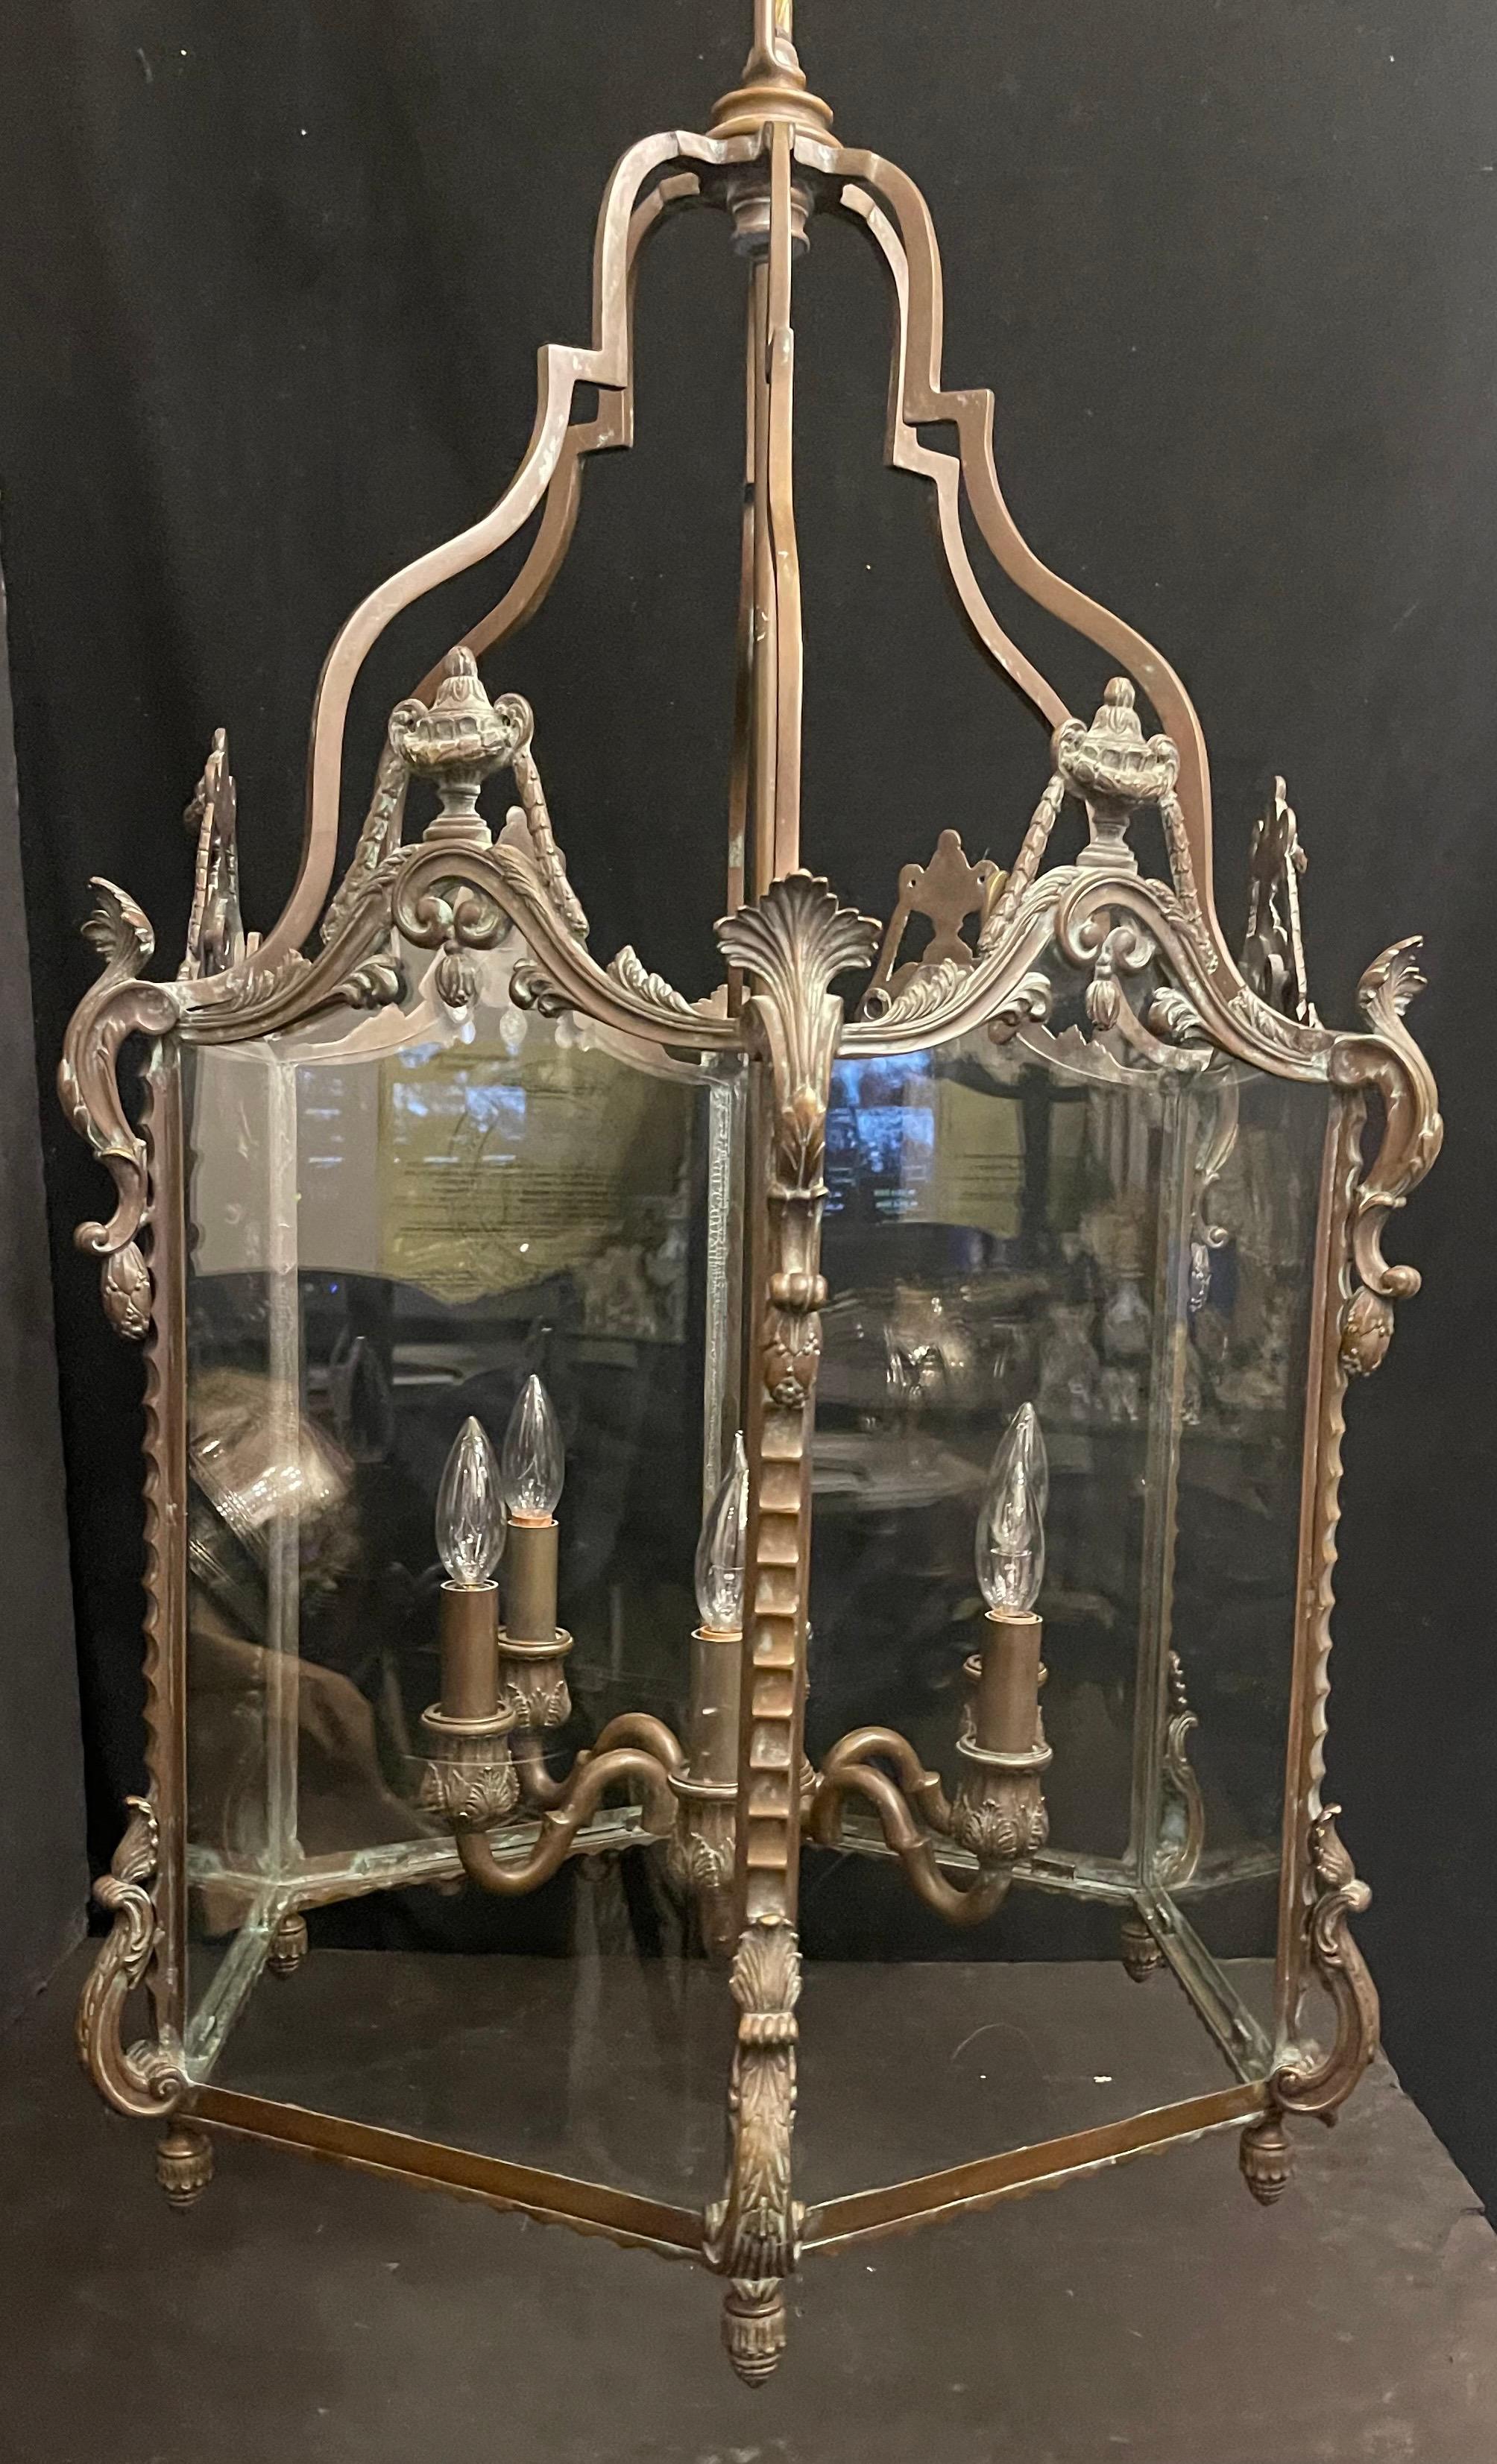 Eine wunderbare Französisch Regency-Stil patiniert Bronze & 6 Panel Glas große Louis XV Manier Laterne mit 6 Kandelaber interne Licht-Cluster.
Aktualisierte Verkabelung und kommt bereit, mit Kette, Vordach und Montagematerial zu installieren.